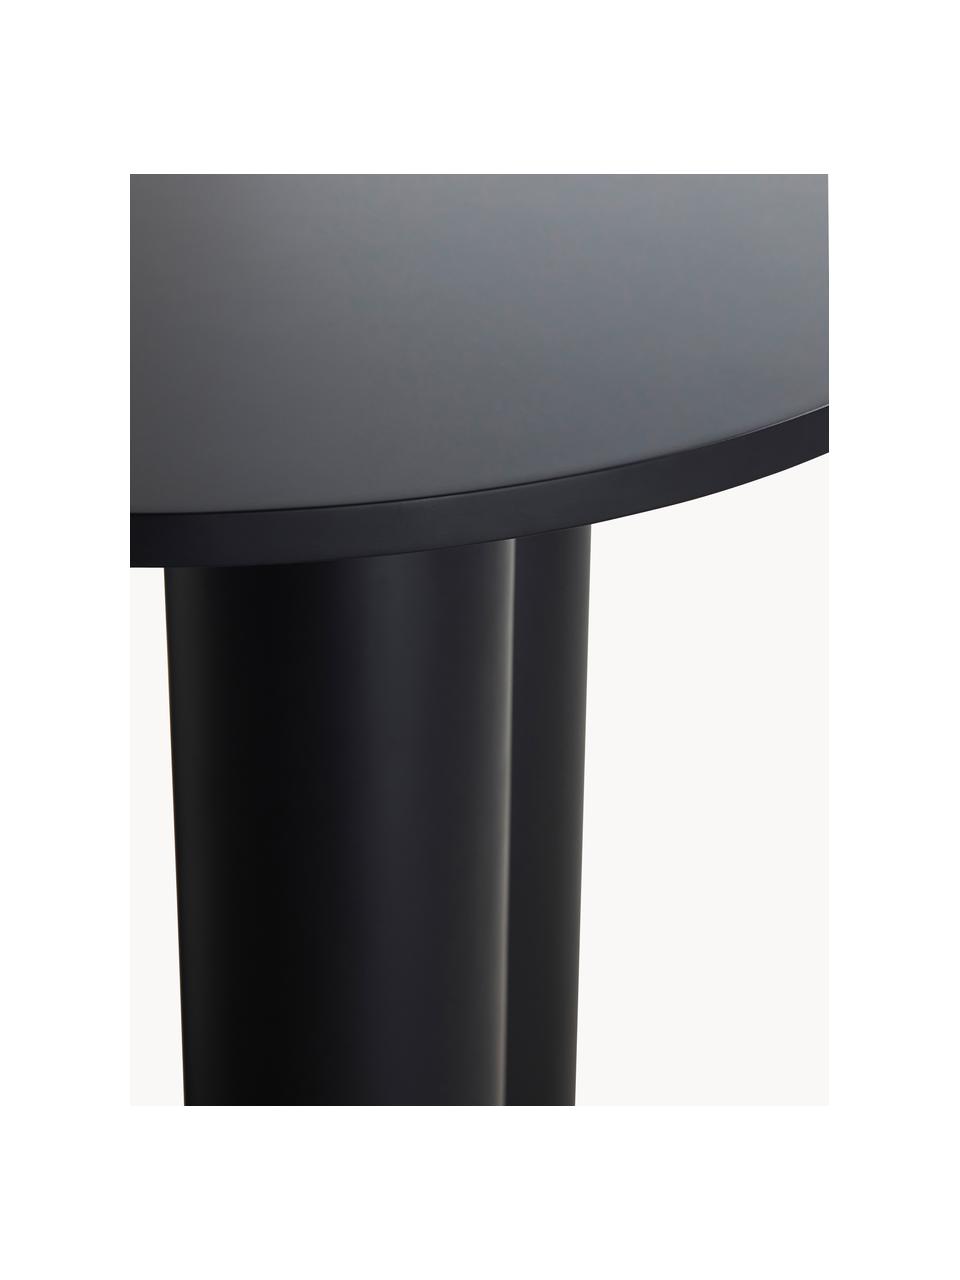 Kulatý stůl Colette, Ø 90 cm, Dřevovláknitá deska střední hustoty (MDF) s dýhou z ořechového dřeva, lakovaná

Tento produkt je vyroben z udržitelných zdrojů dřeva s certifikací FSC®., Černá, Ø 90 cm